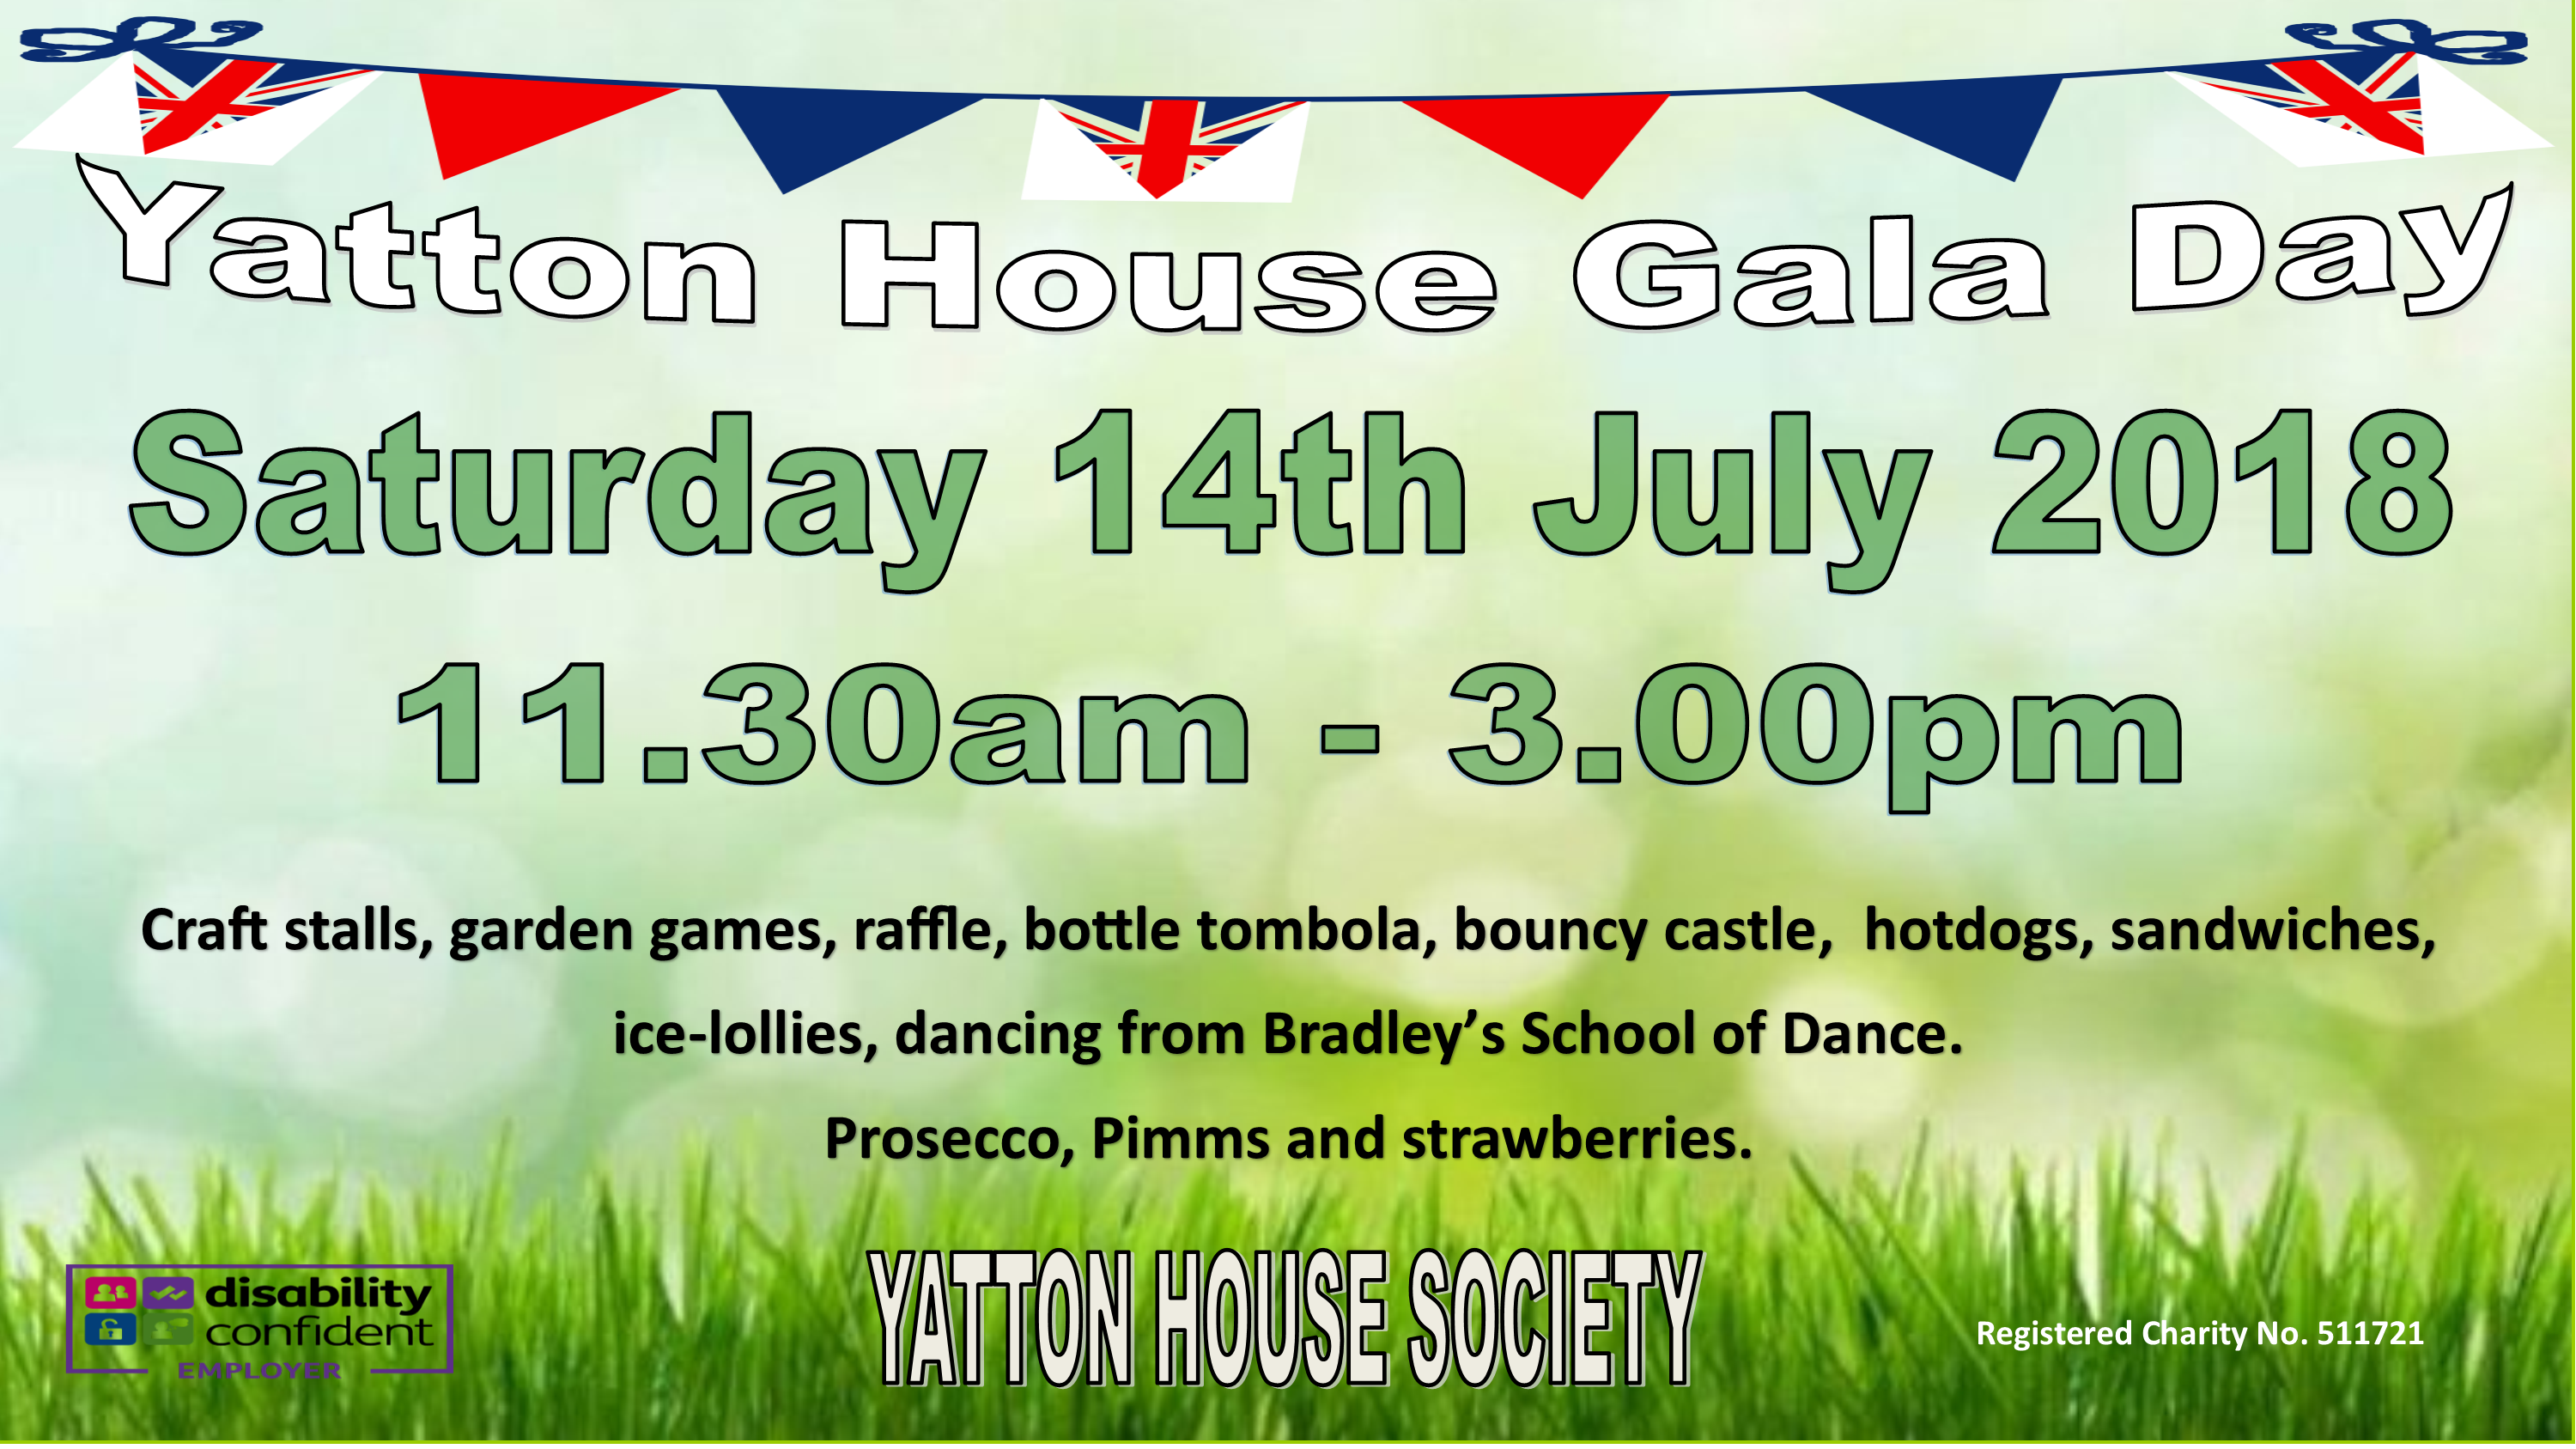 Yatton House Gala Day Image